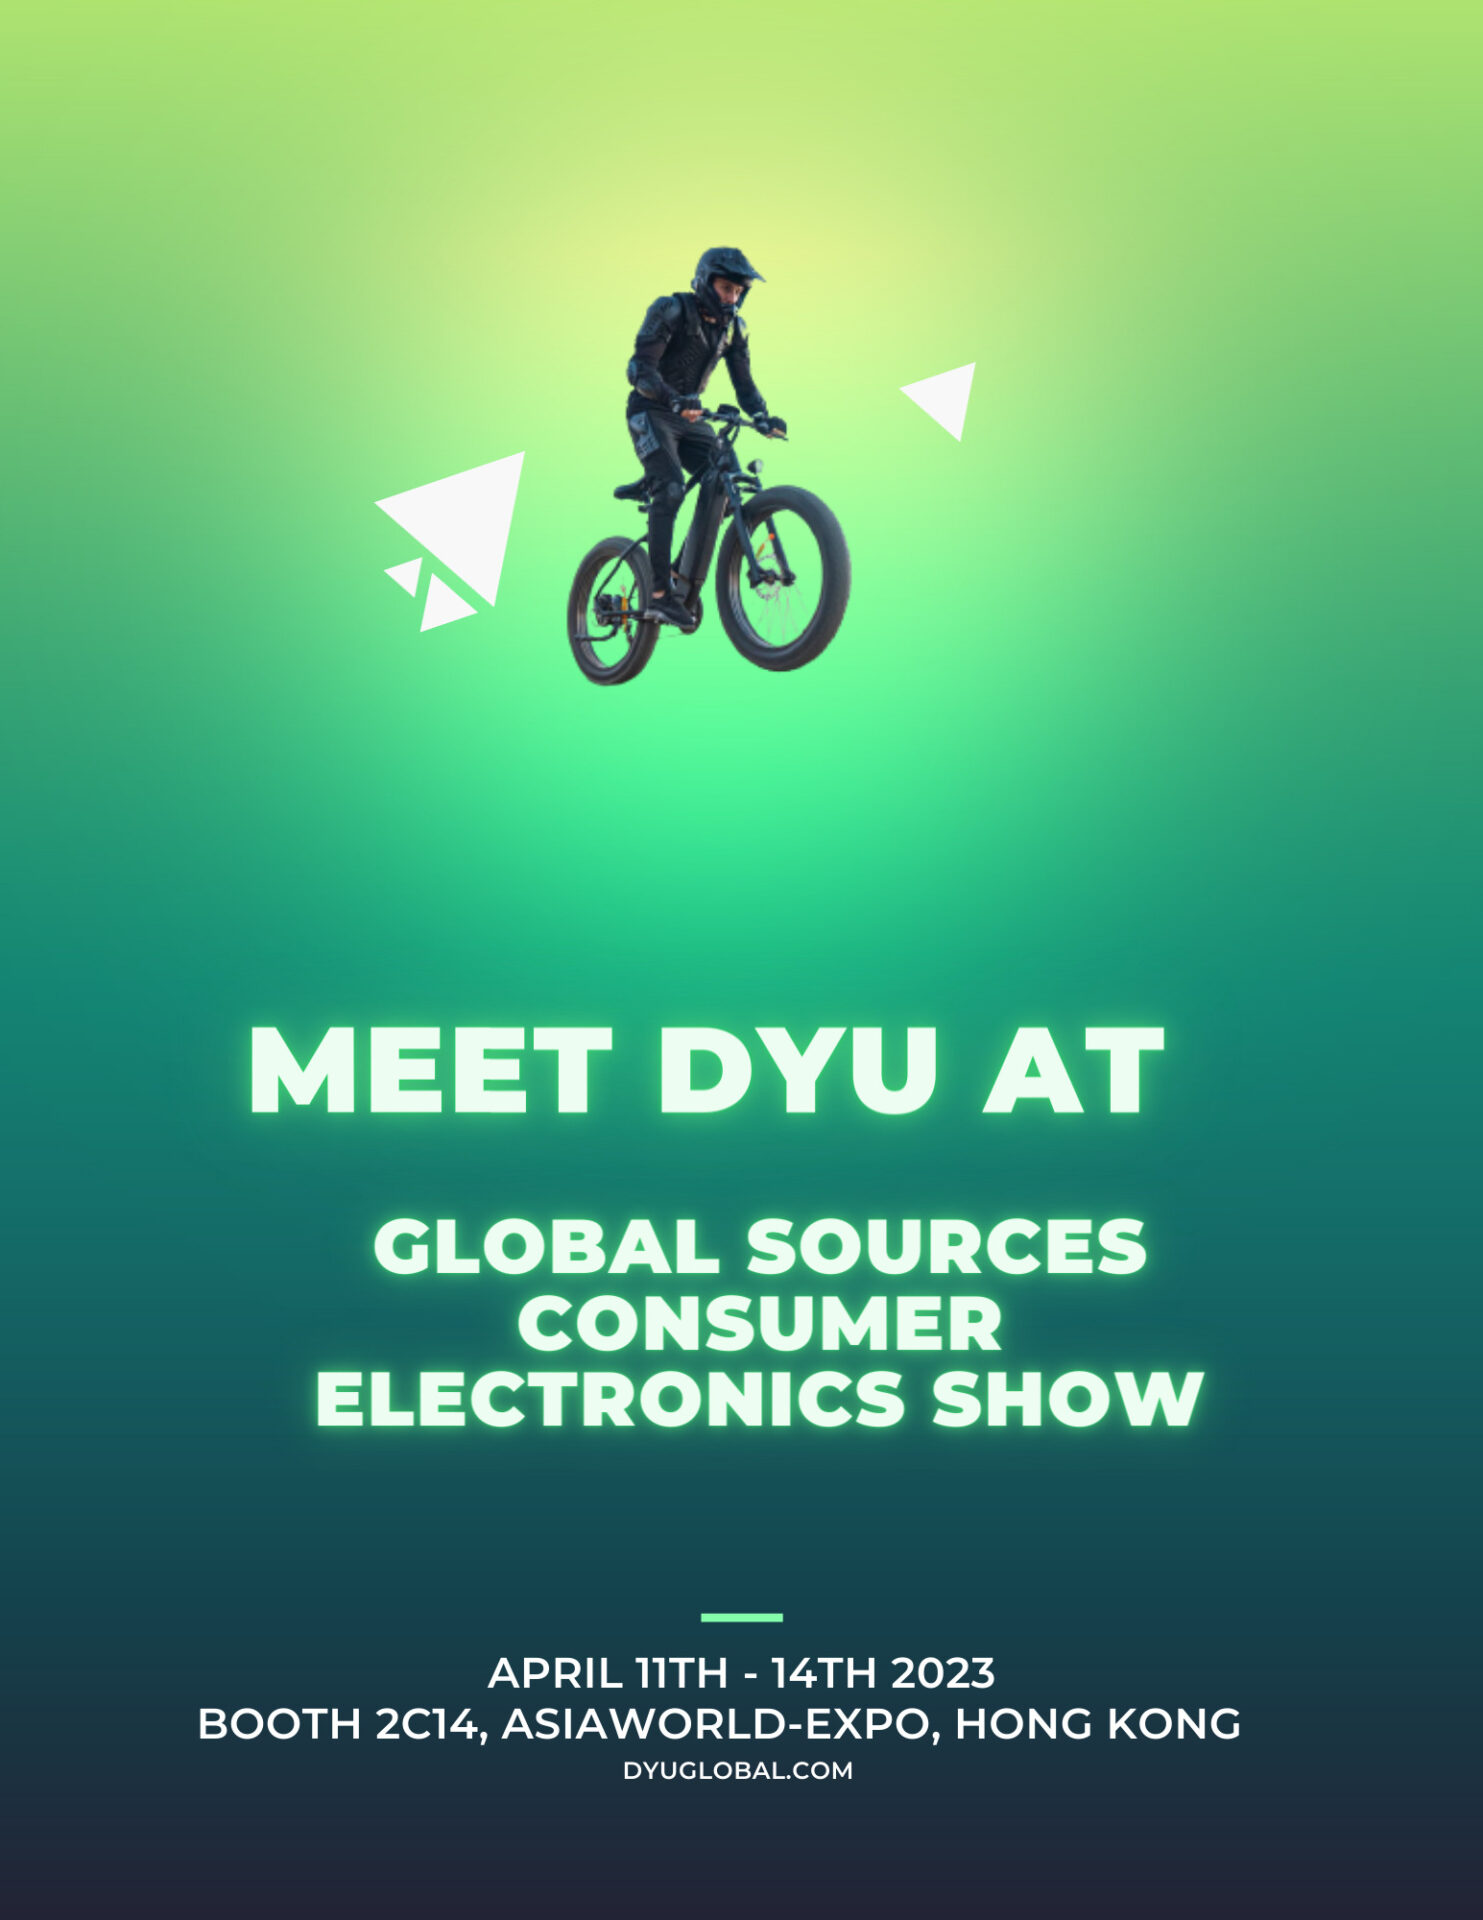 تشارك DYU في معرض هونغ كونغ للمصادر العالمية للإلكترونيات الاستهلاكية